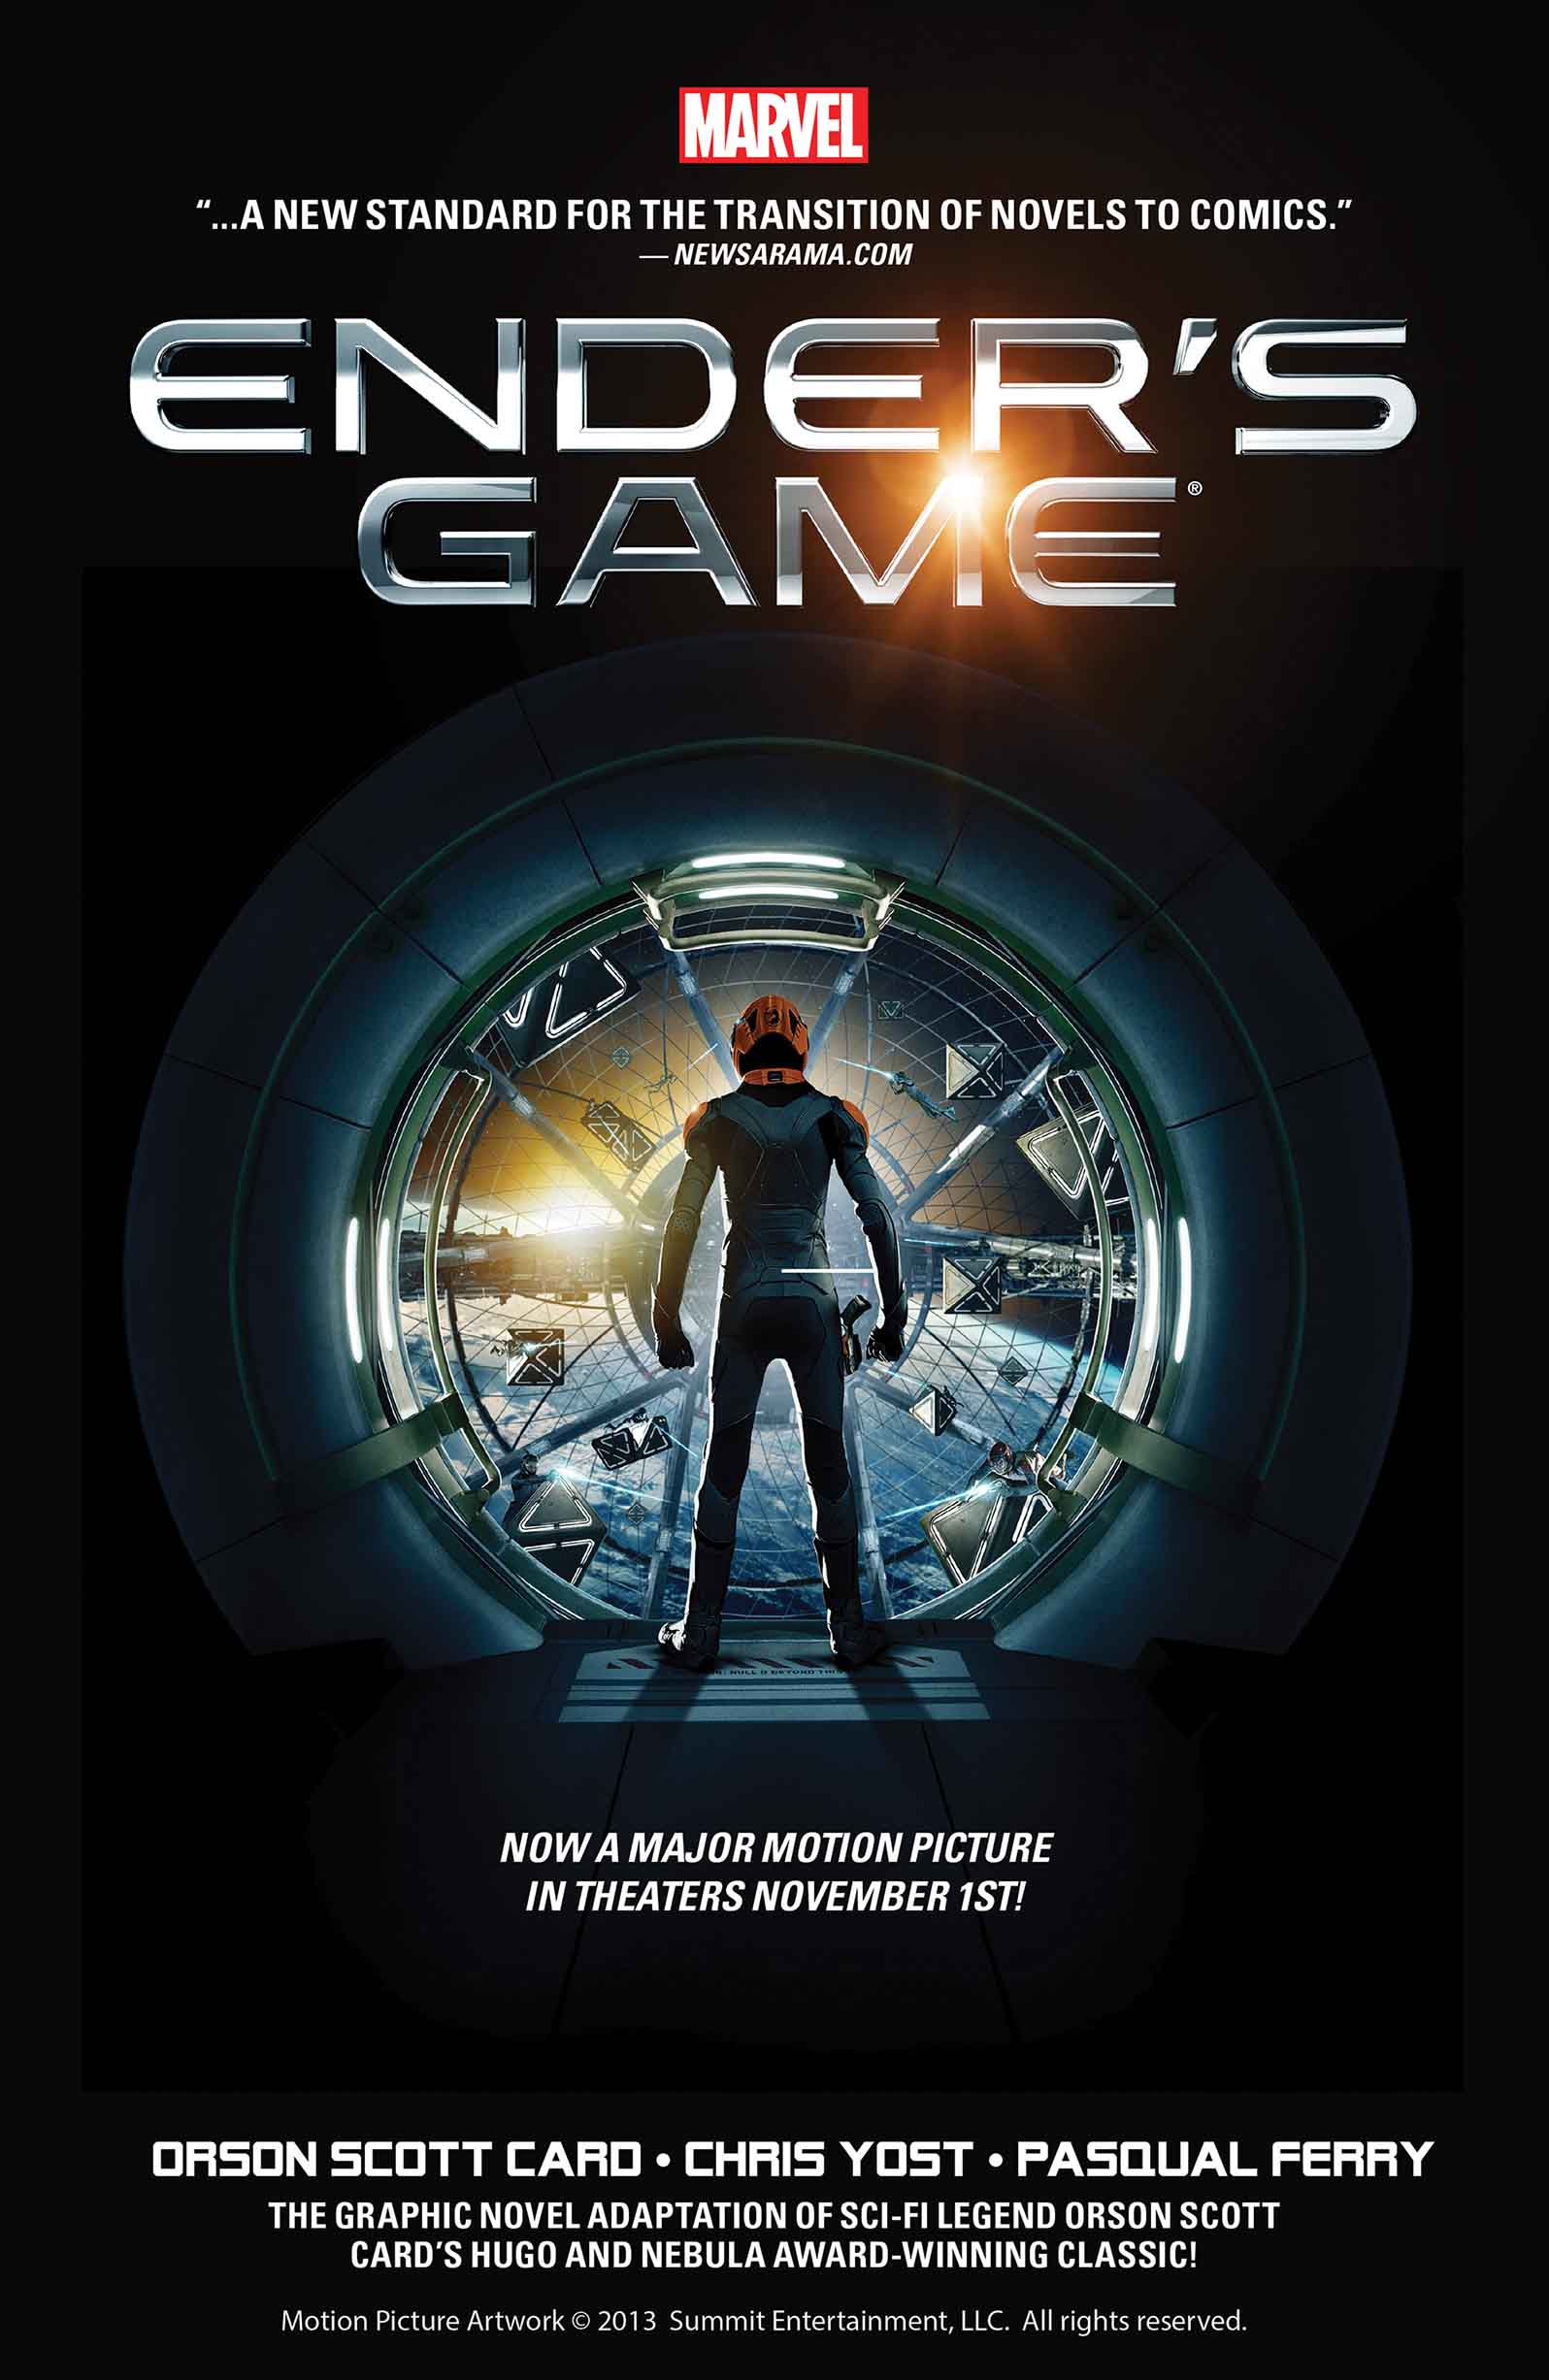 Đọc truyện tranh Ender\'s Game để khám phá một thế giới khoa học viễn tưởng đầy kịch tính và phức tạp, với những nhân vật đầy sức mạnh và tài năng. Sự đan xen giữa chiến tranh và sự trưởng thành của nhân vật chính sẽ khiến bạn không thể dừng lại.